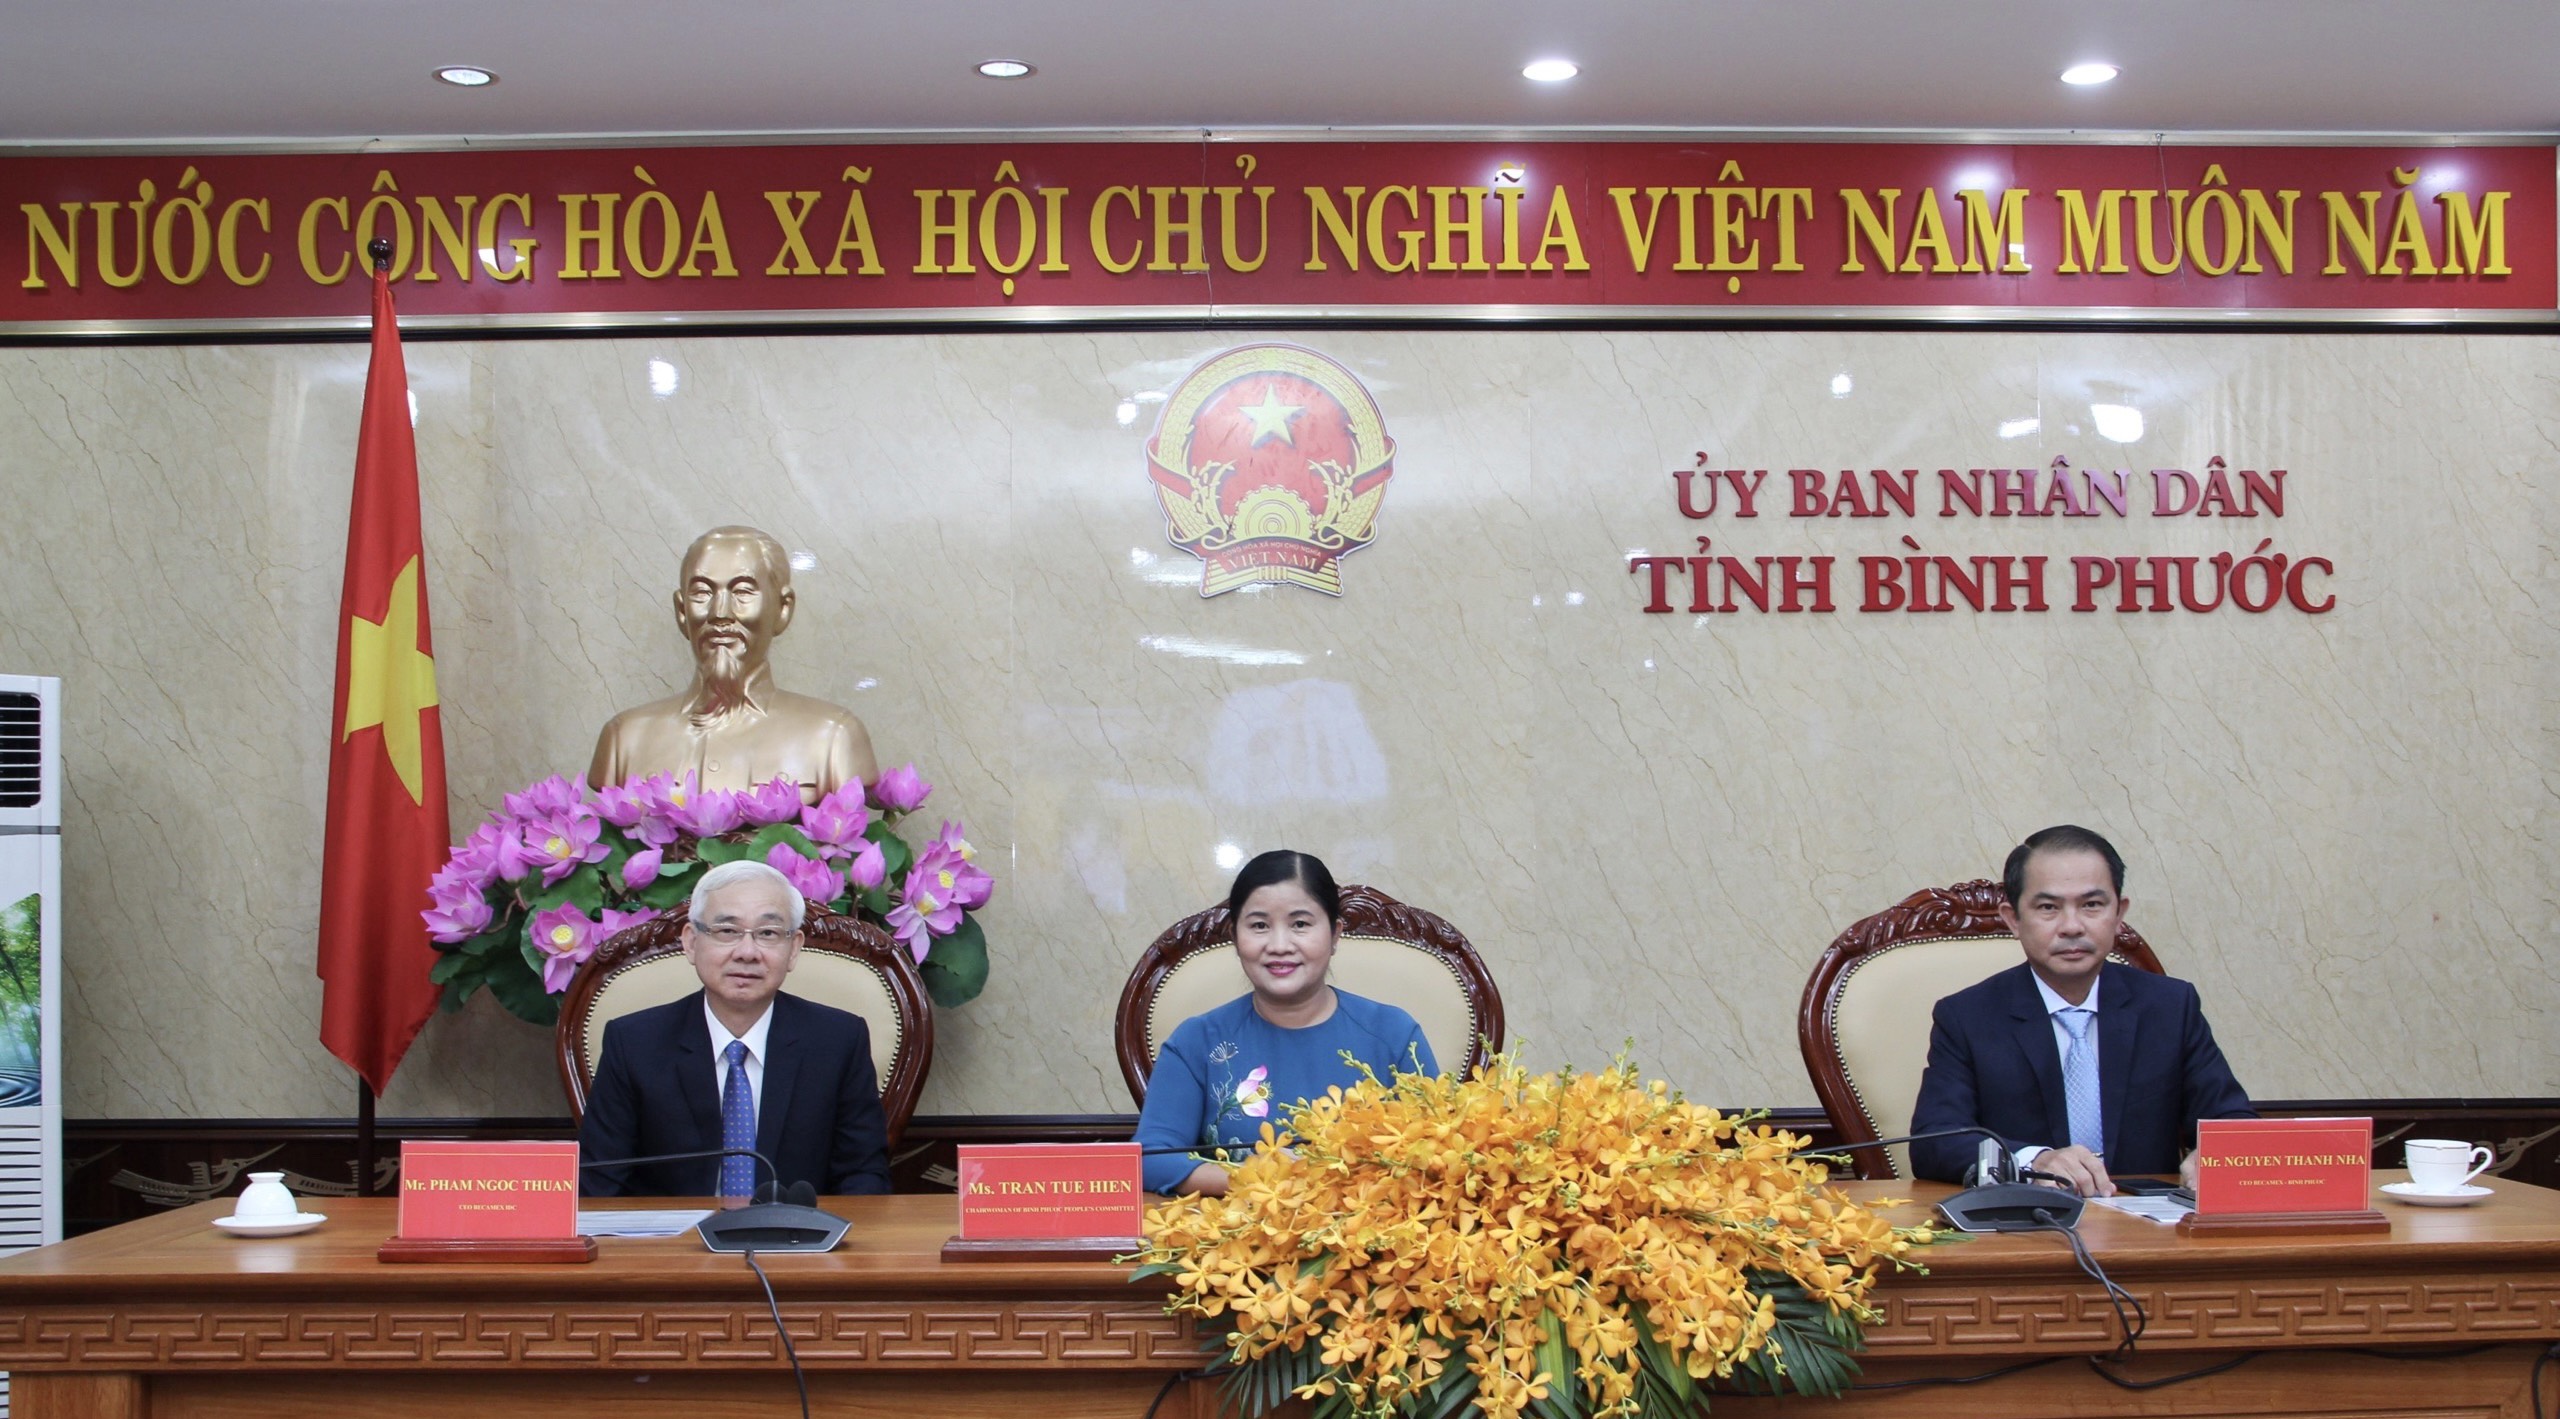 “Nền tảng 4 tốt” ở Bình Phước góp phần "giữ chân" nhiều nhà đầu tư Thái Lan